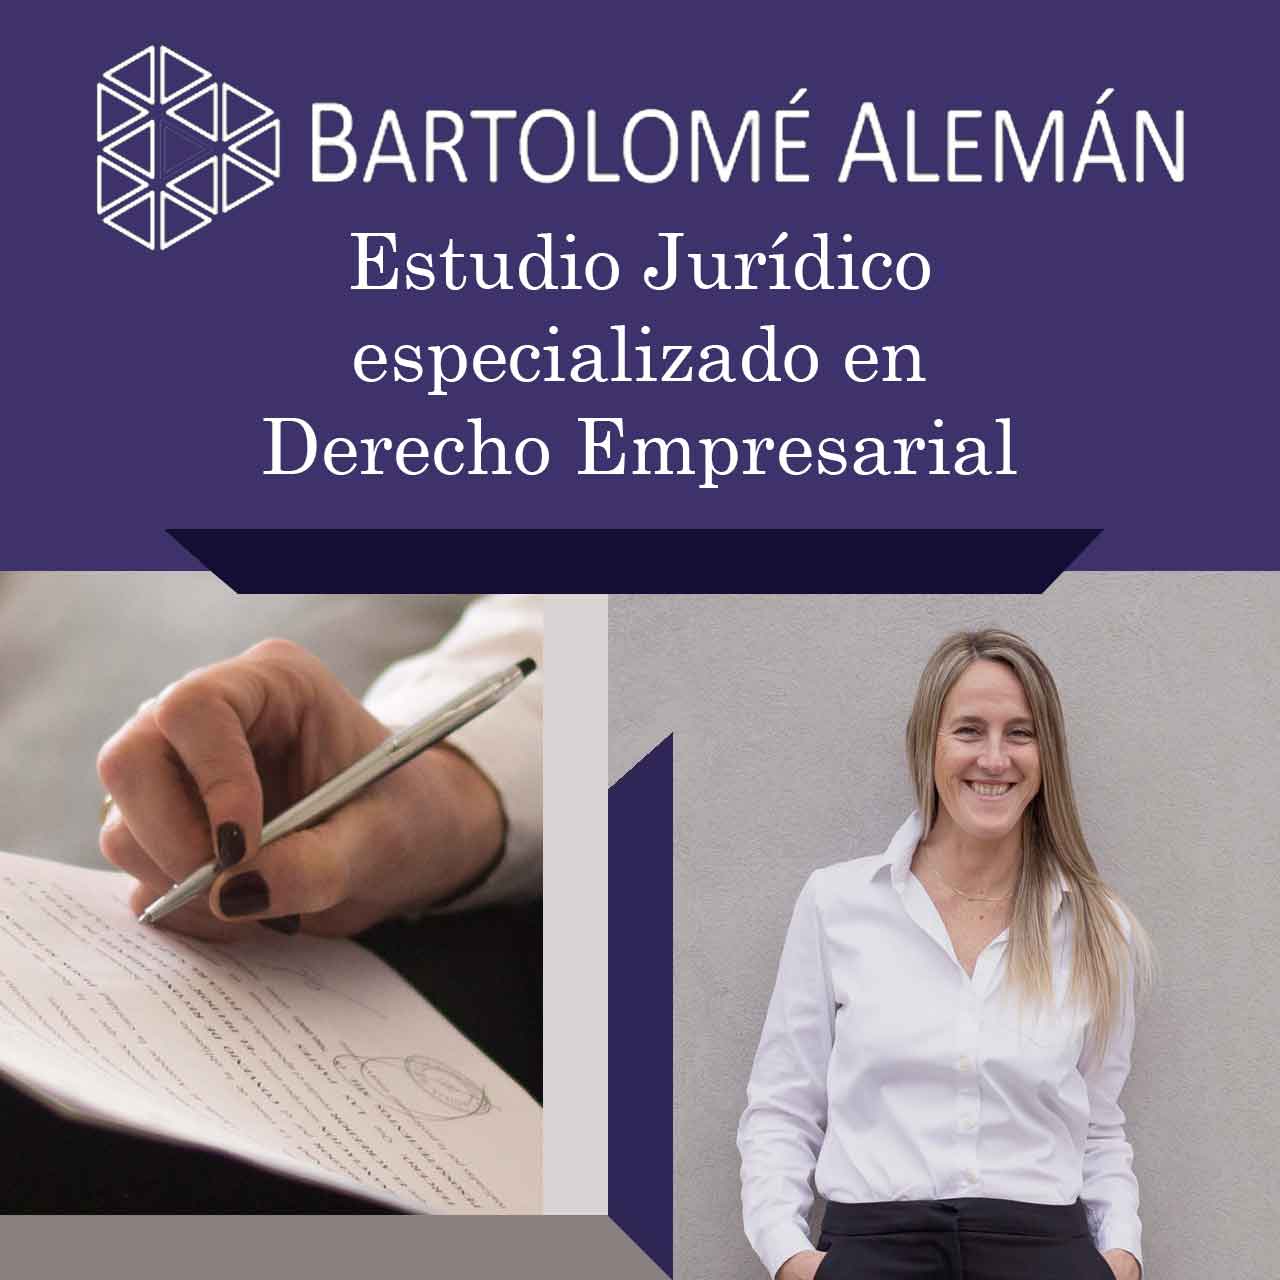 BARTOLOMÉ ALEMÁN Estudio Jurídico especializado en Derecho Empresarial